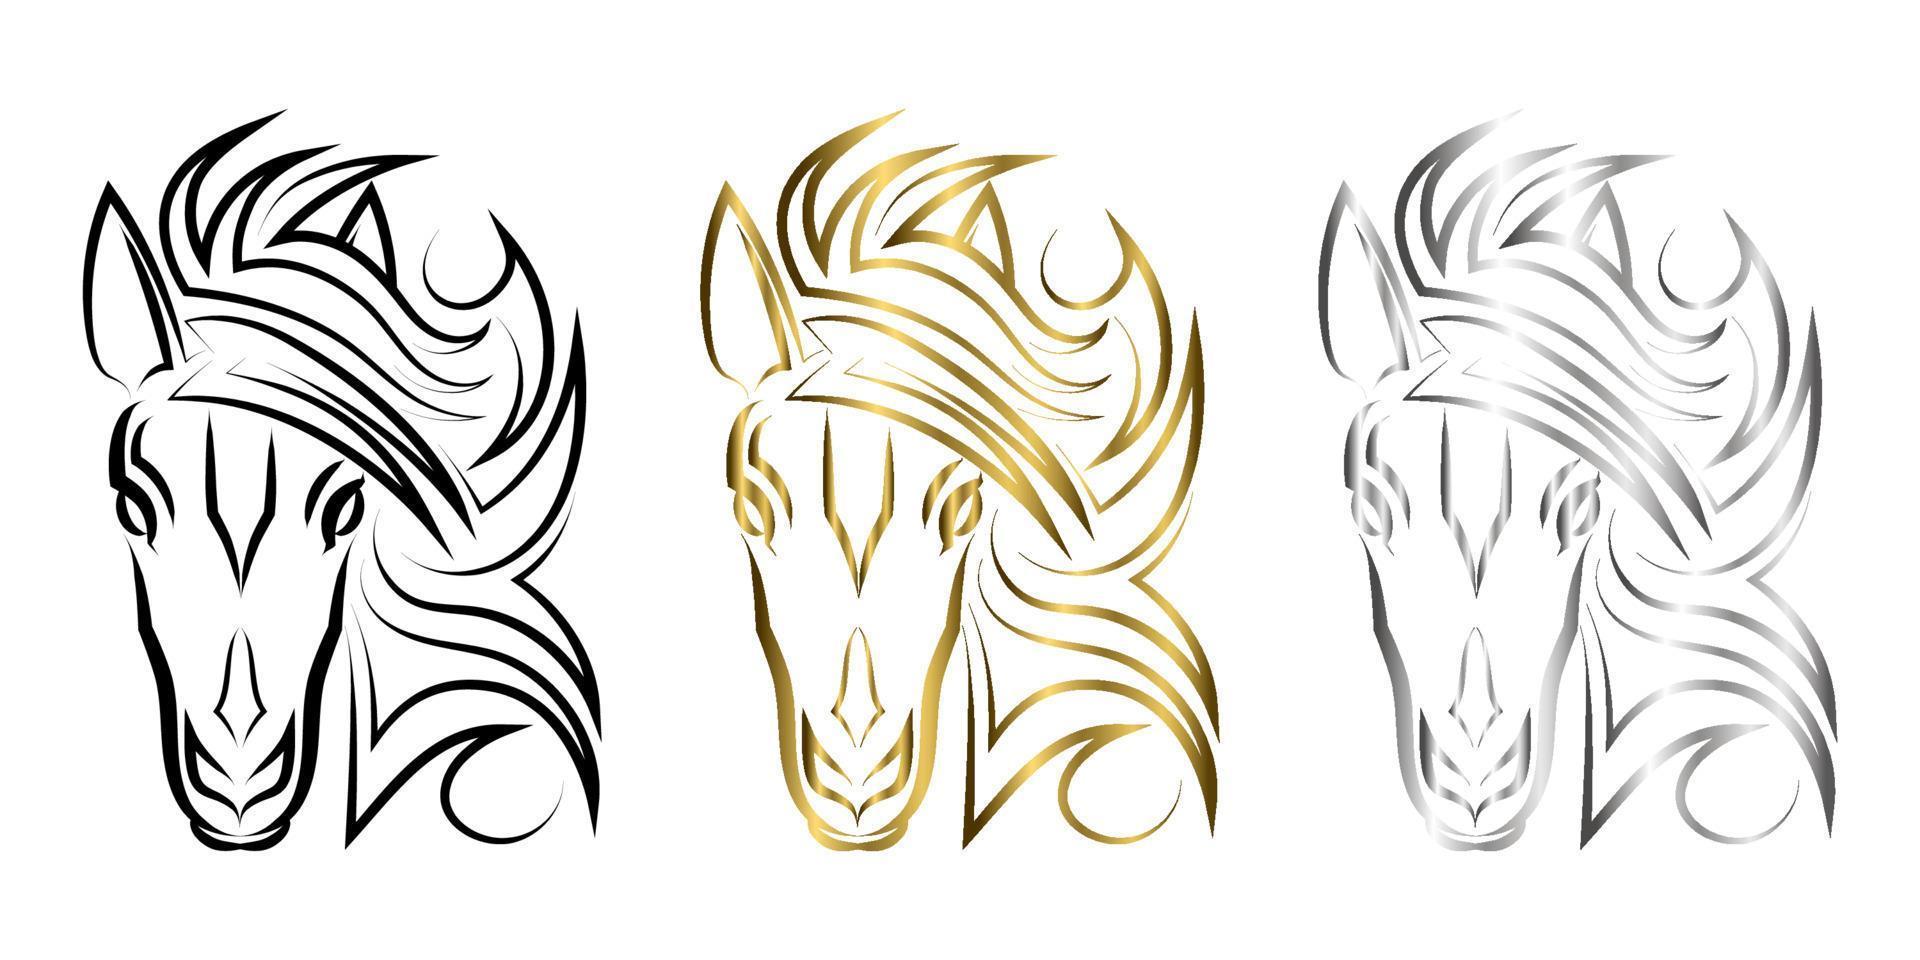 vecteur d'art en ligne de tête de cheval. convient pour une utilisation comme décoration ou logo.